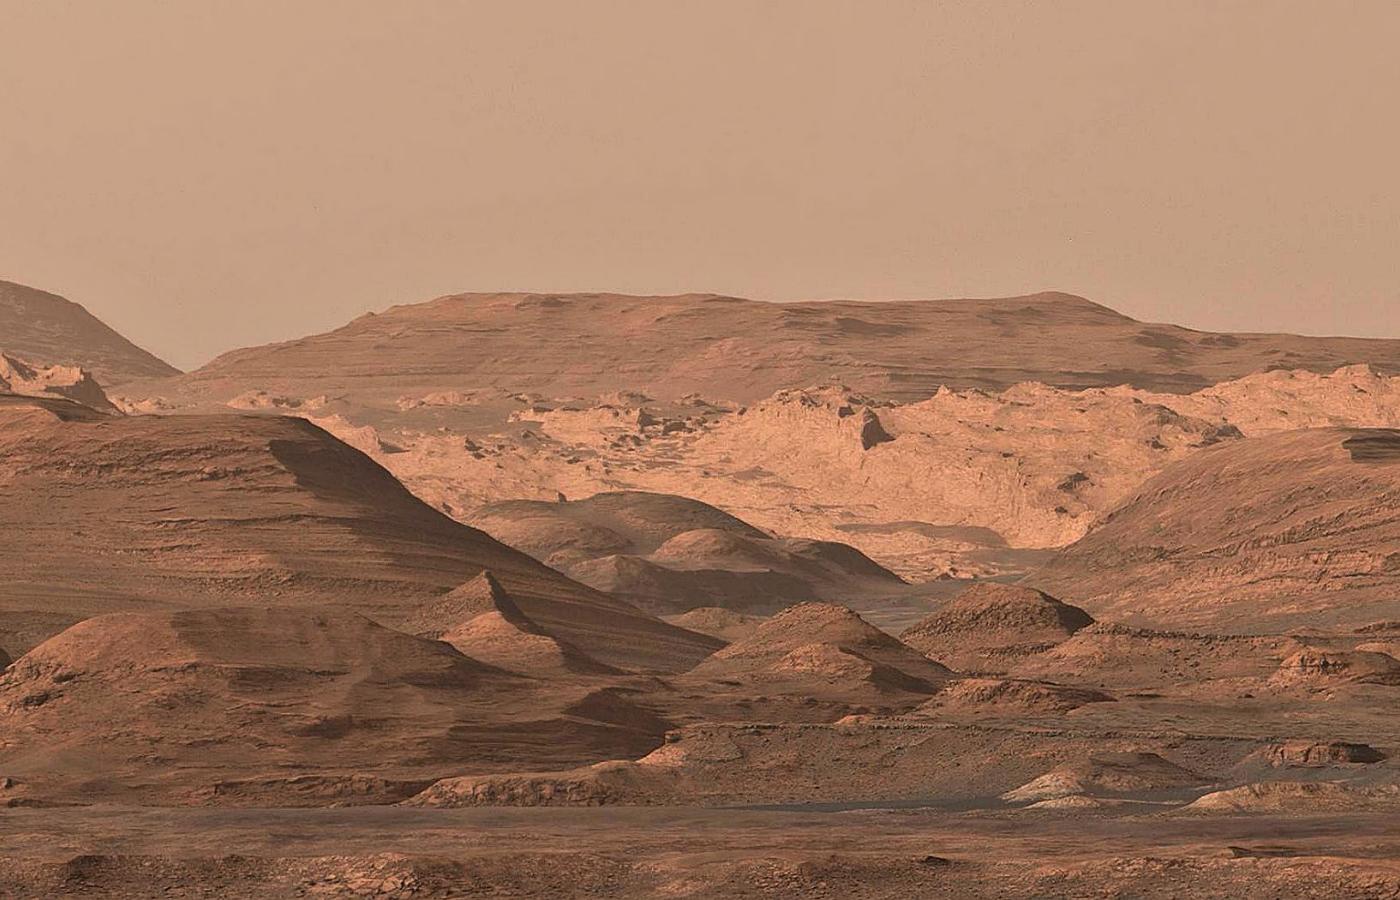 Obraz powierzchni Marsa uzyskany ze zdjęć wykonanych przez łazik Curiosity.